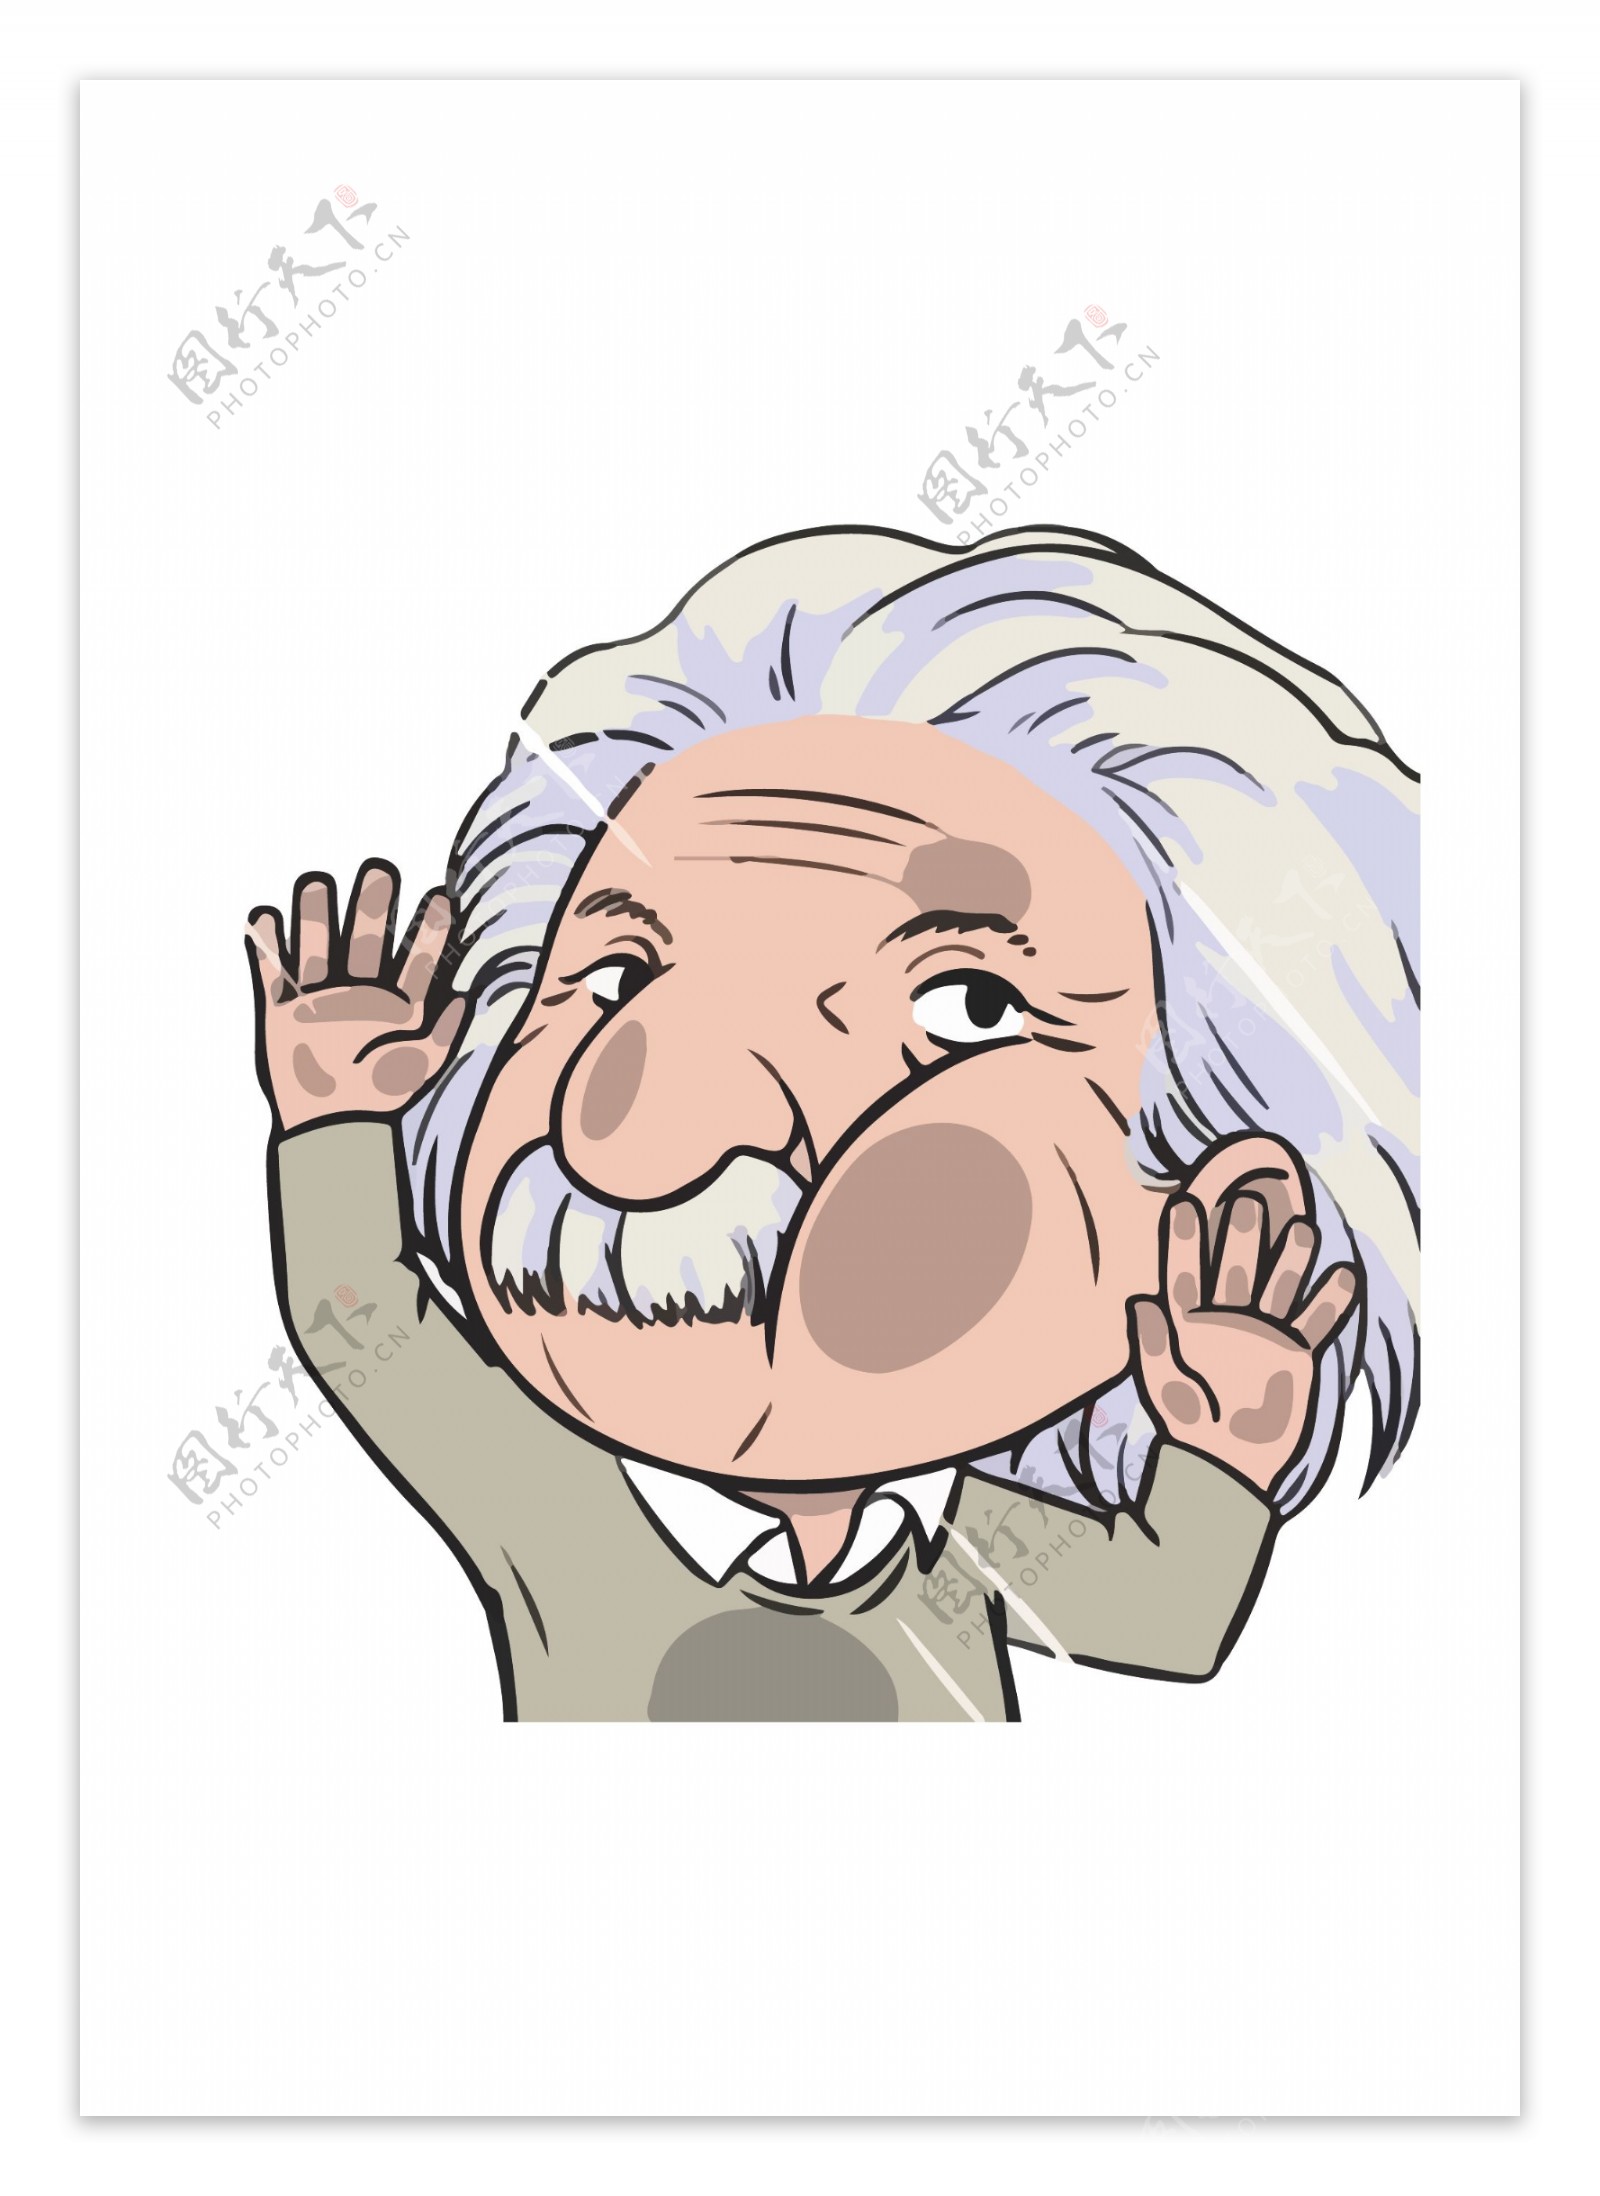 卡通人物爱因斯坦小老头ai矢量图下载